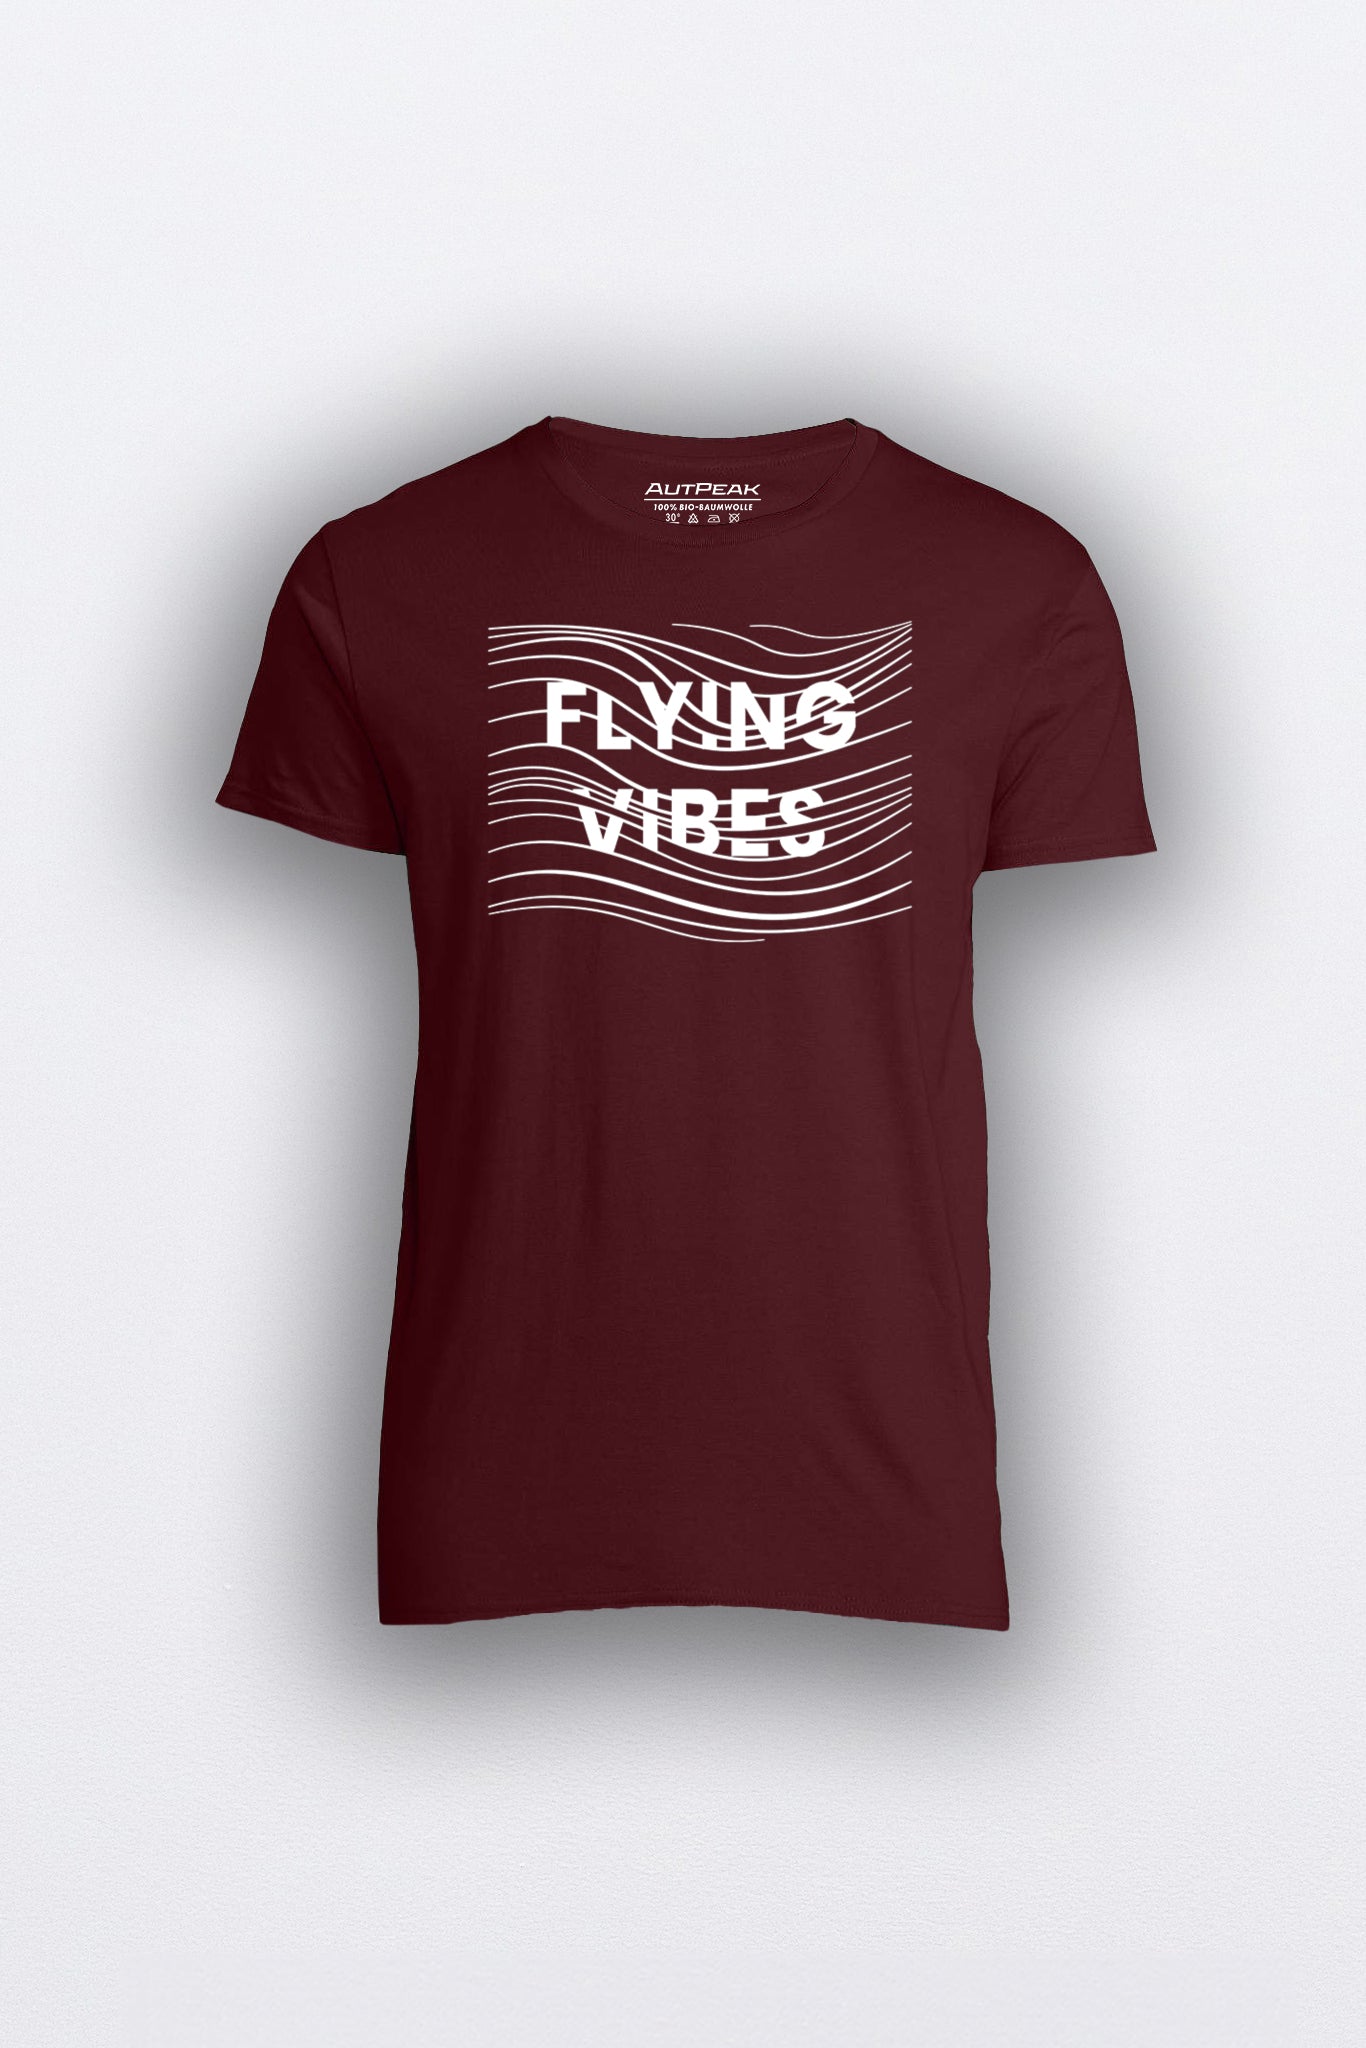 "FLYING VIBES" ORGANIC T-SHIRT